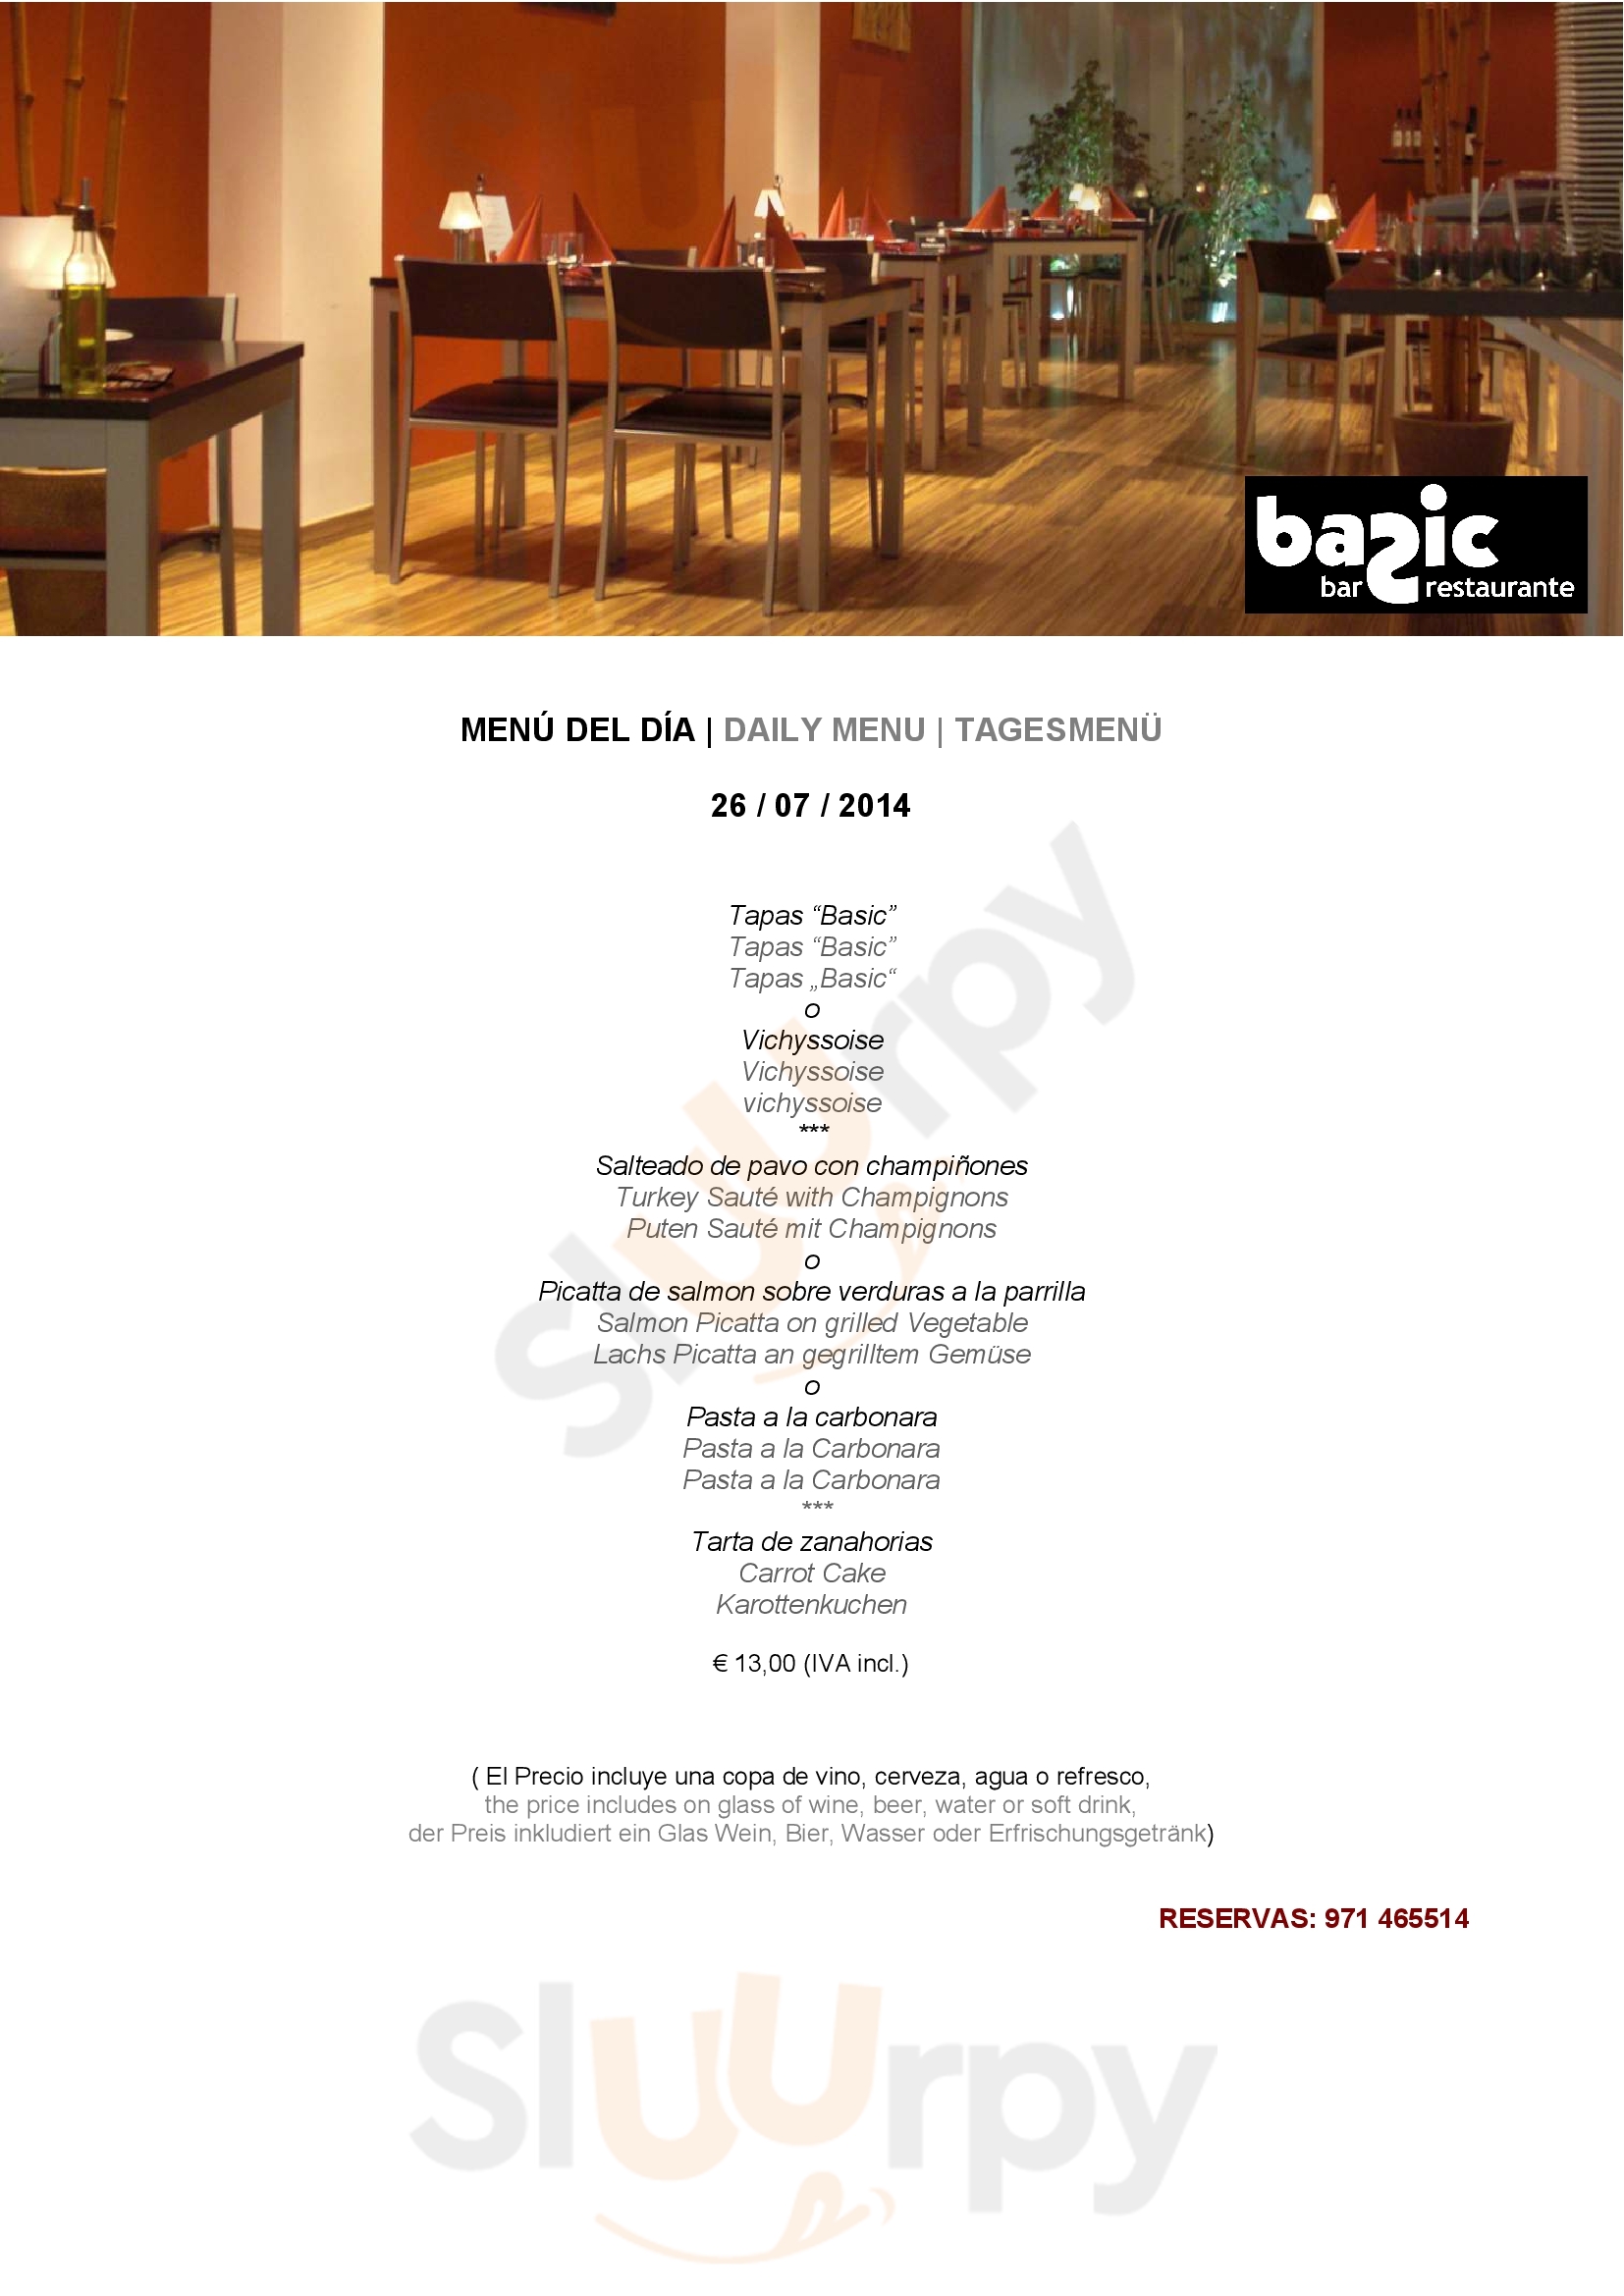 Basic Bar&restaurante Palma de Mallorca Menu - 1